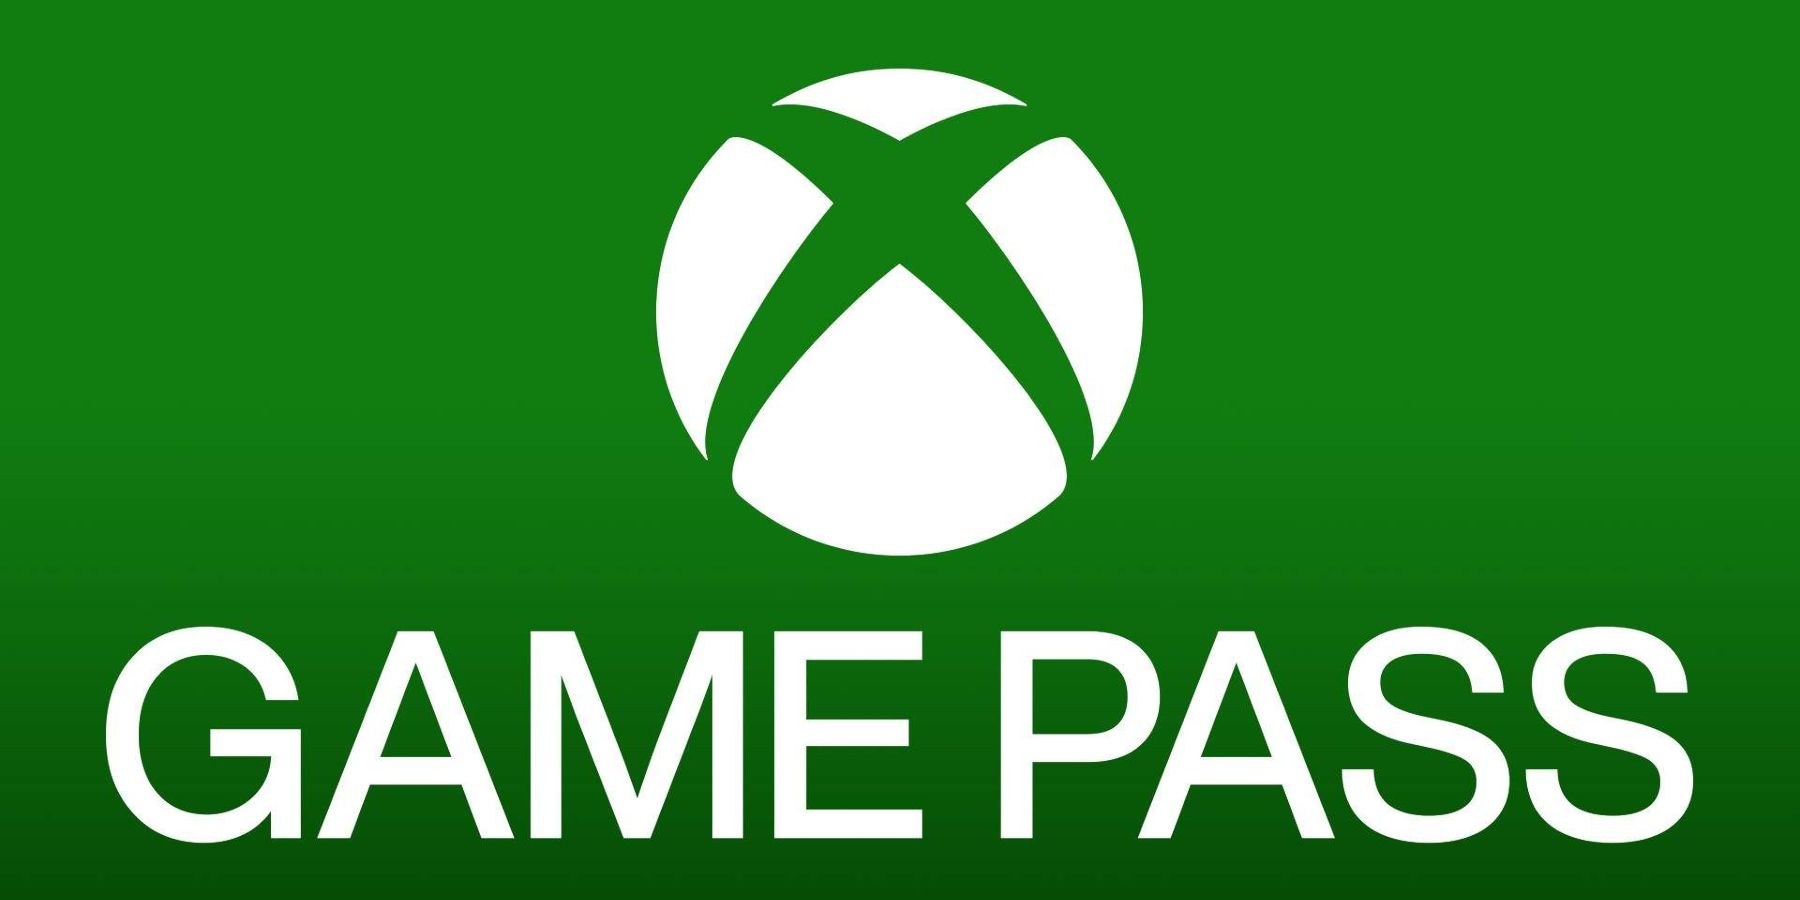 განახლება: Xbox Game Pass-ის აბონენტები 30 მილიონზე მეტია, ამბობს Take-Two-ს აღმასრულებელი დირექტორი